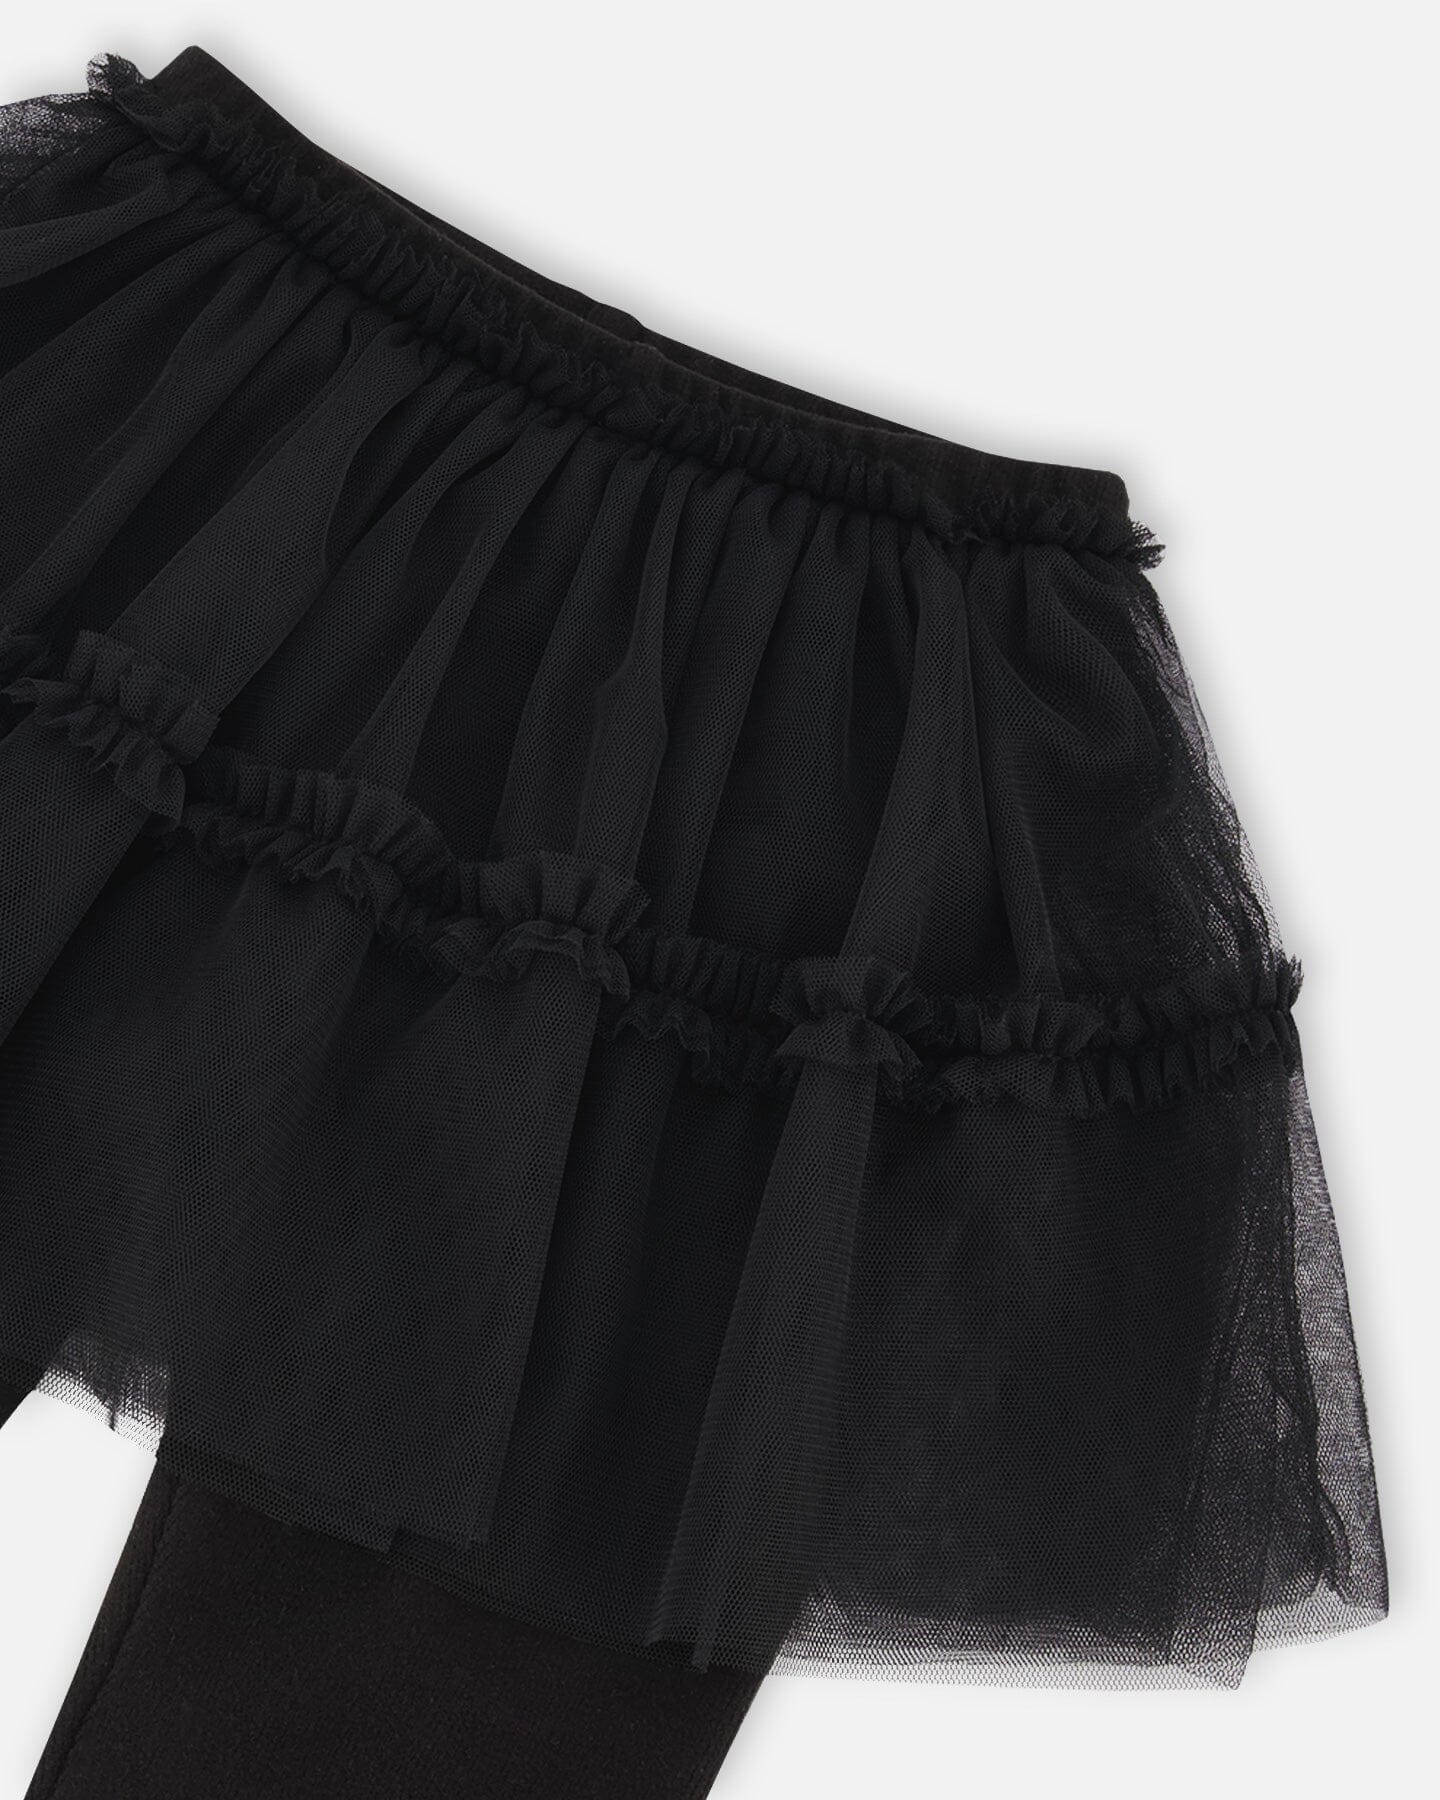 Super Soft Leggings With Tulle Skirt Black - F20YG81_999